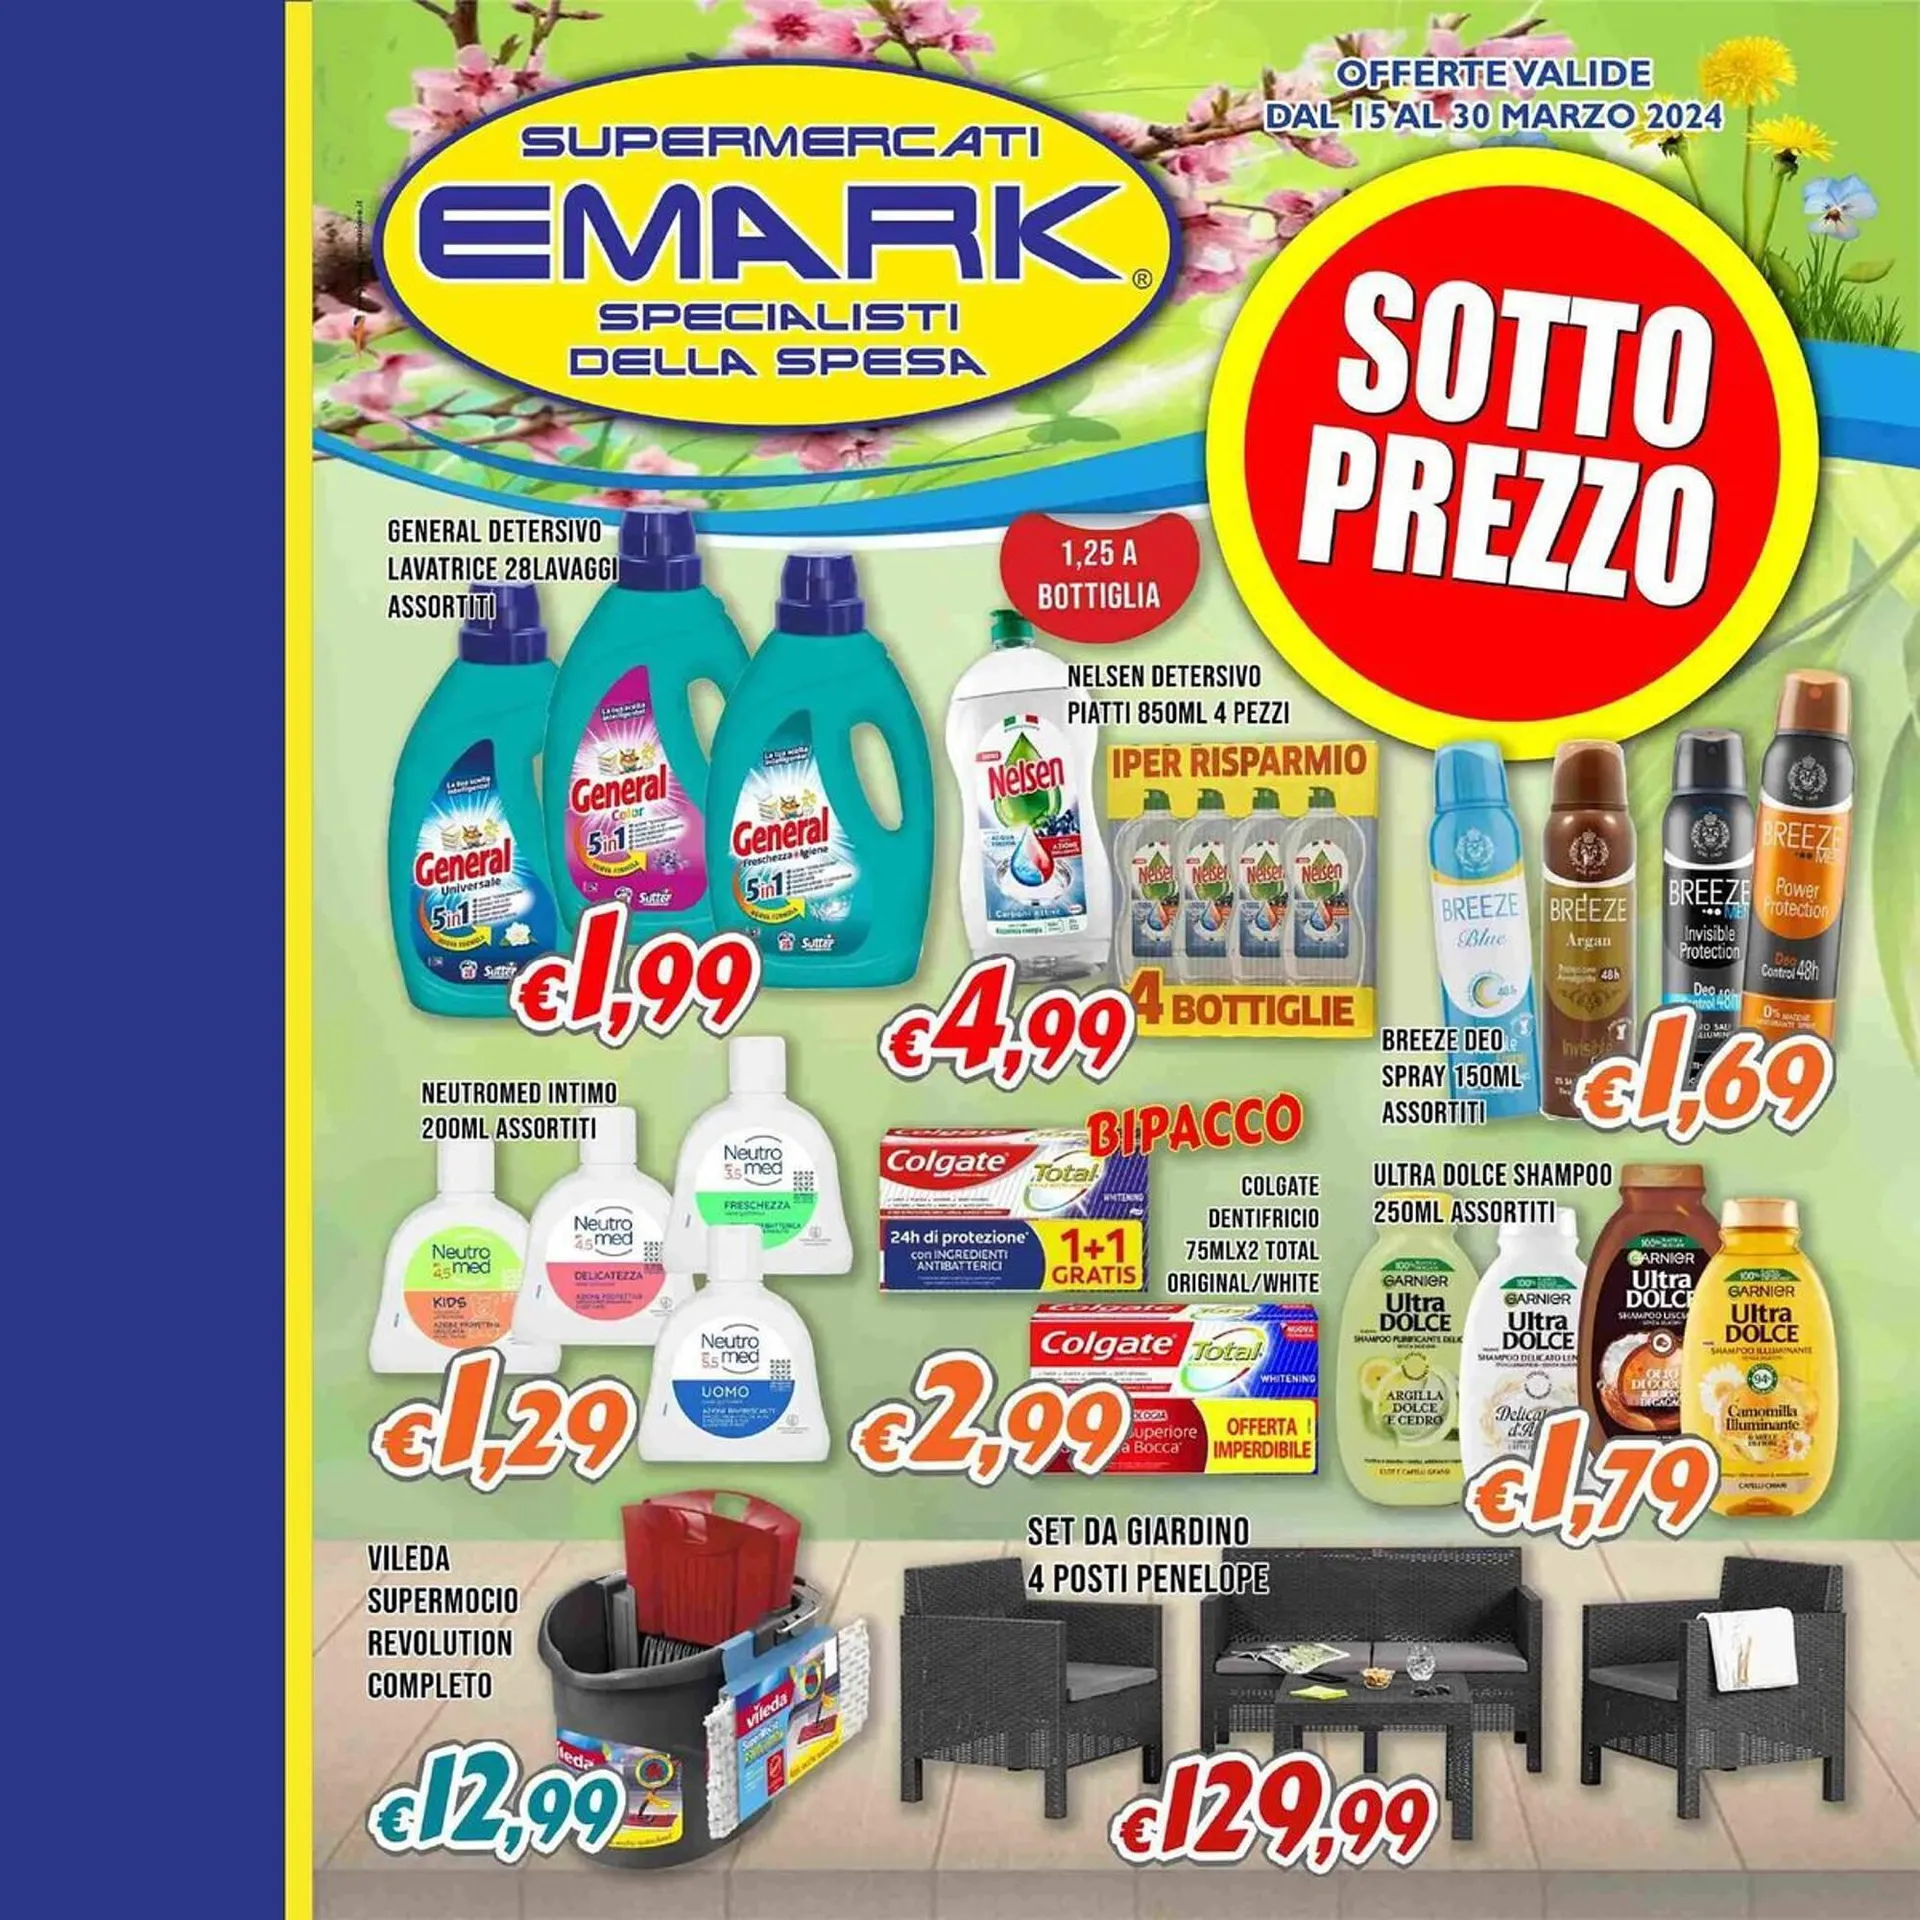 Volantino Supermercati Emark da 15 marzo a 30 marzo di 2024 - Pagina del volantino 